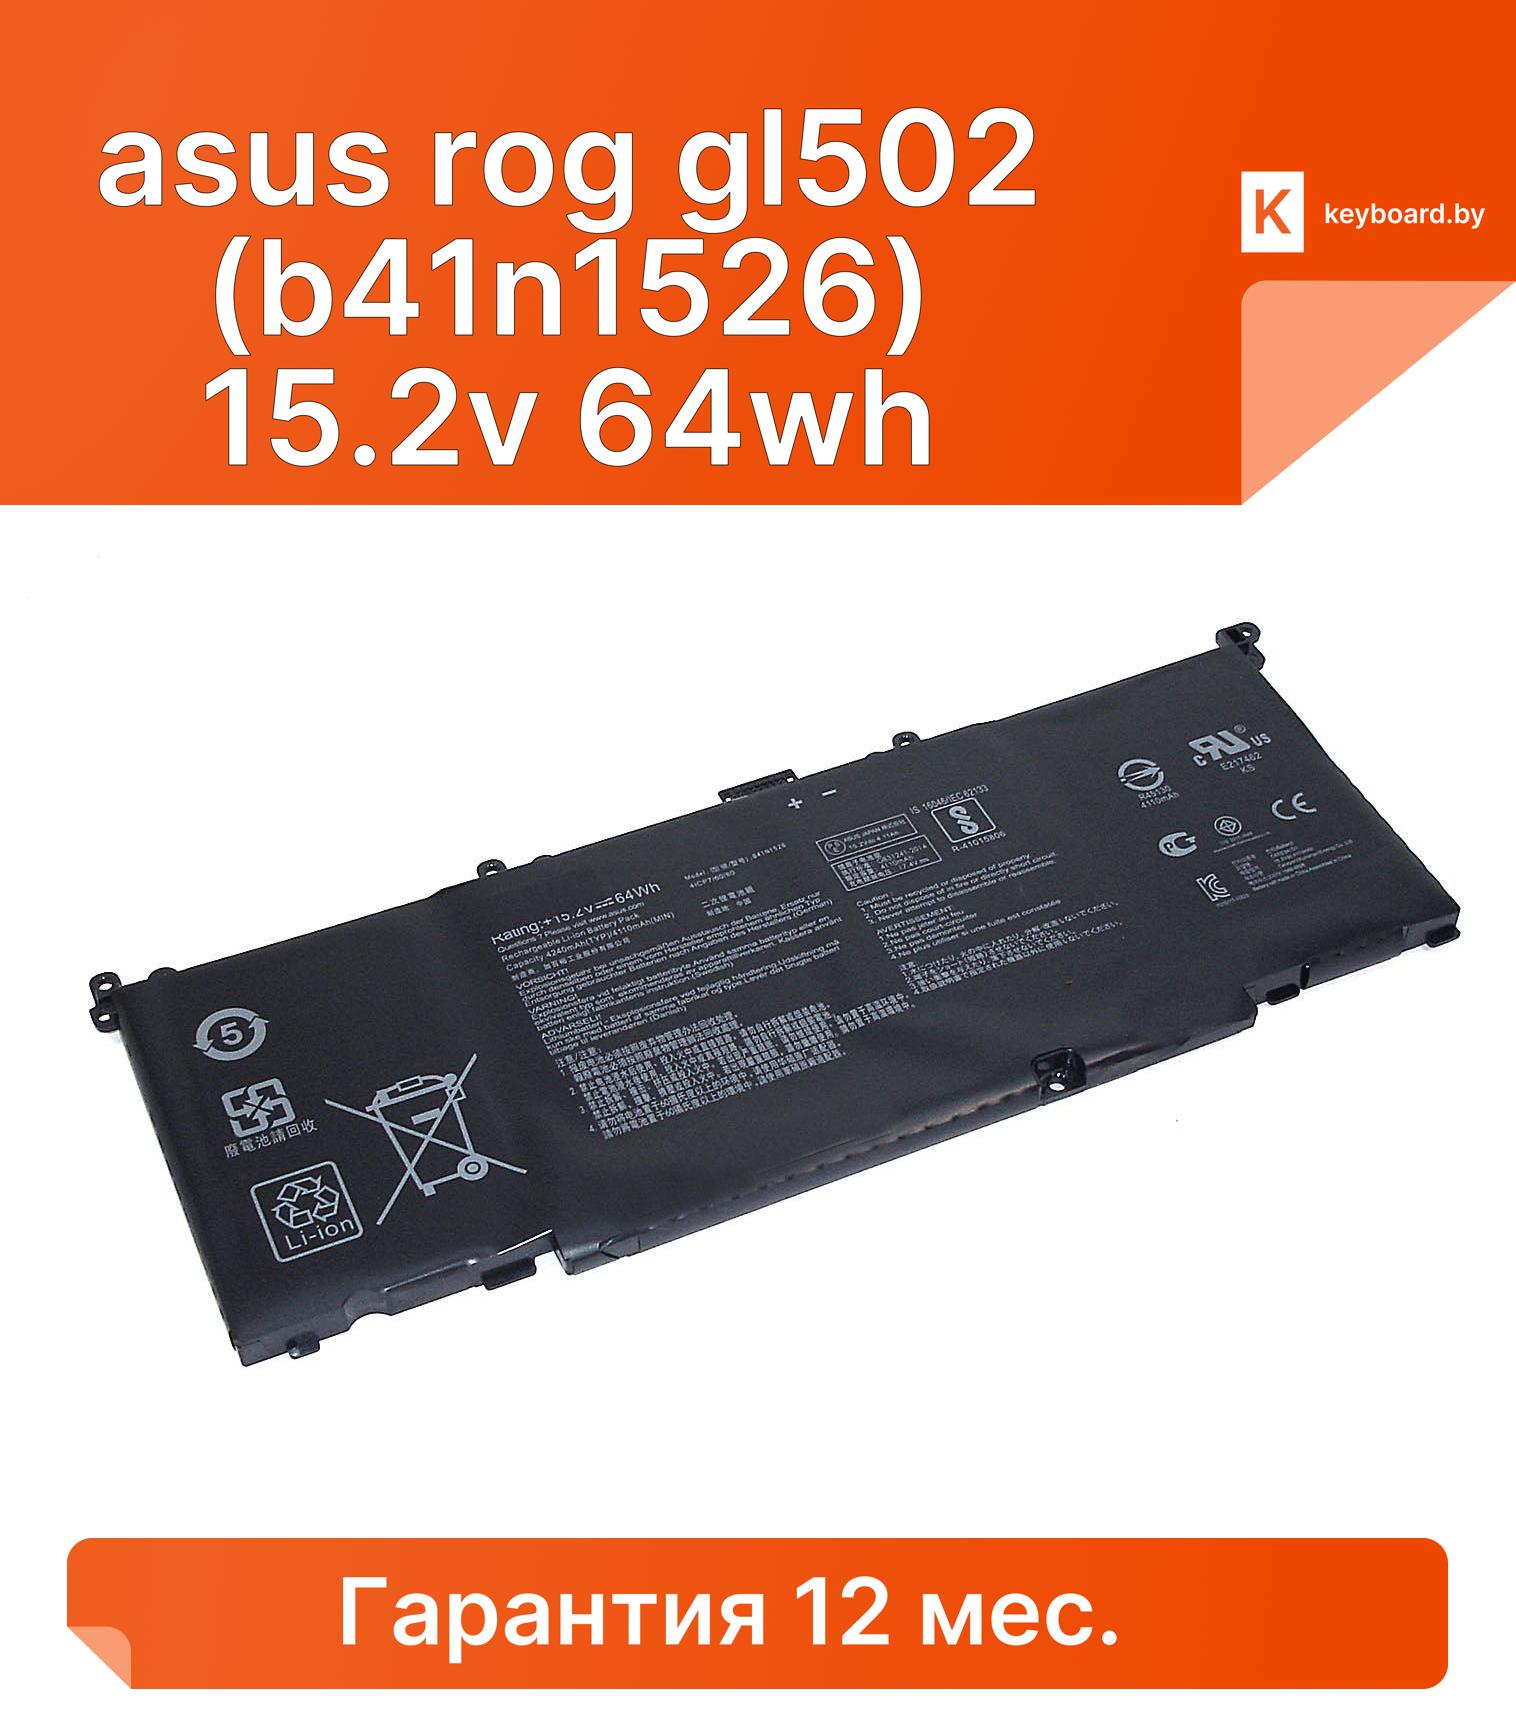 Аккумуляторная батарея для ноутбука asus rog gl502 (b41n1526) 15.2v 64wh